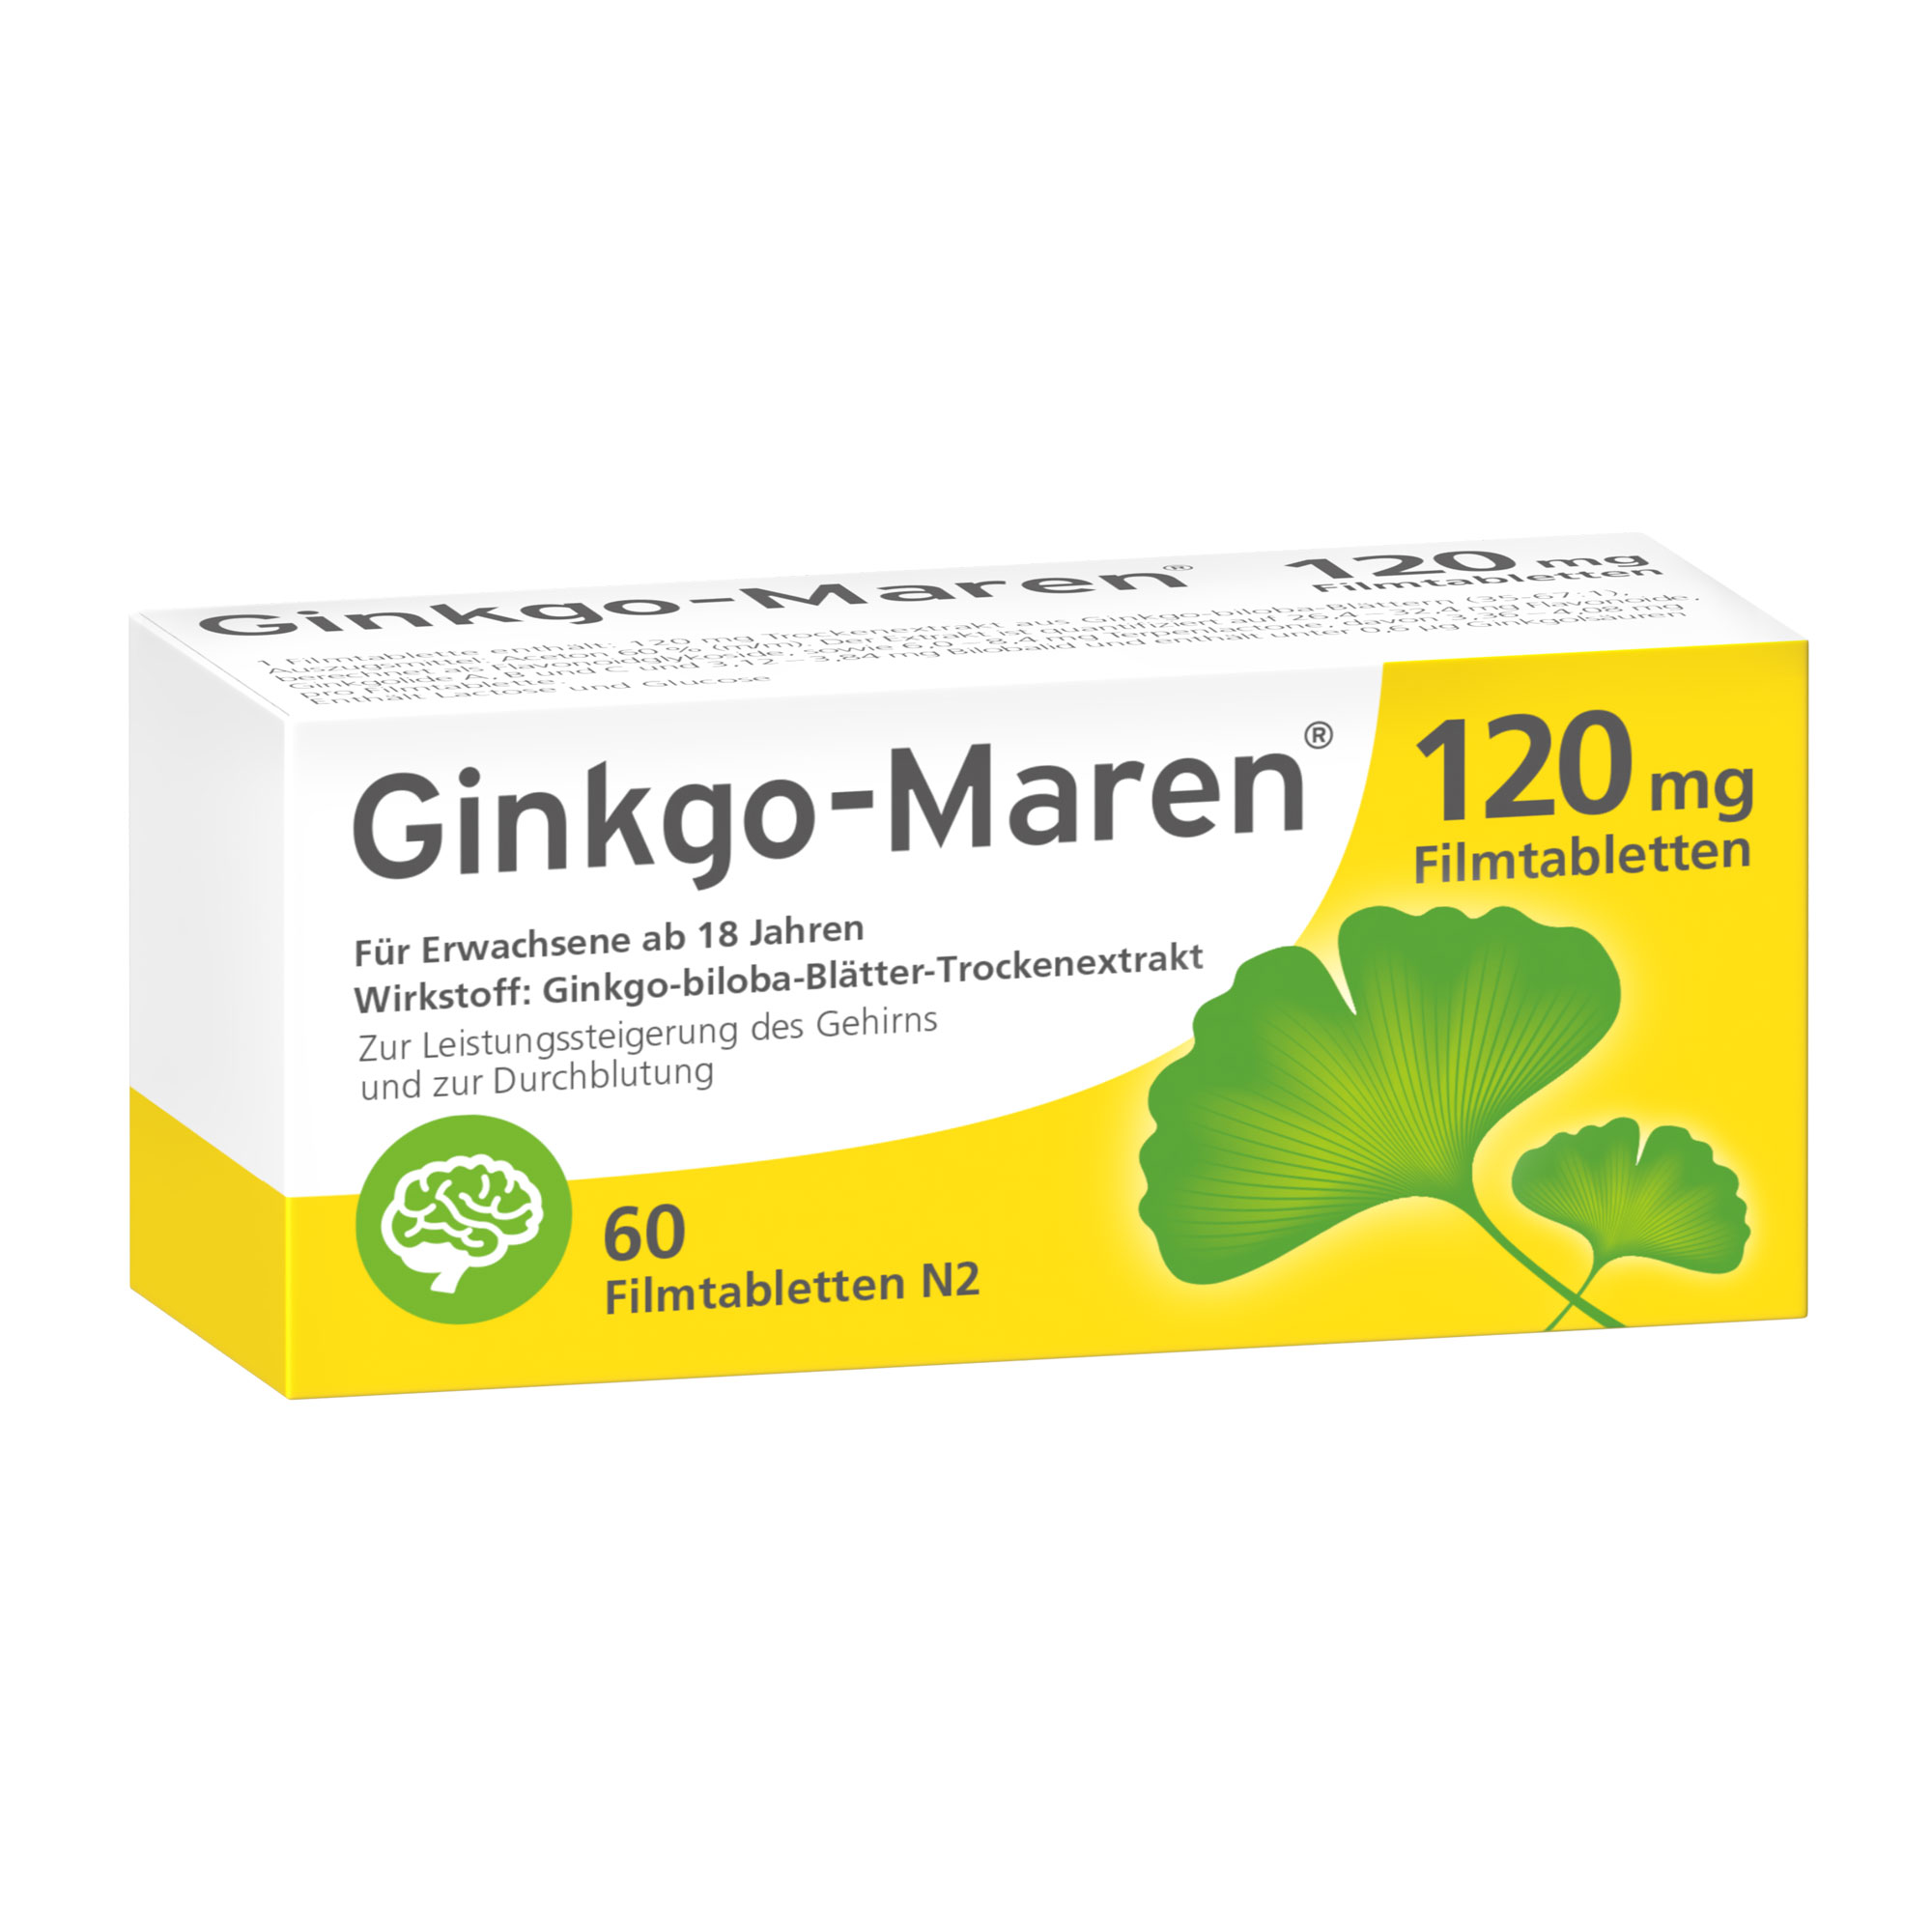 Fördert die Konzentration, stärkt die Gedächtnisleistung und unterstützt die geistige Leistungsfähigkeit. Mit 120 mg Trockenextrakt aus Ginkgo-biloba-Blättern.